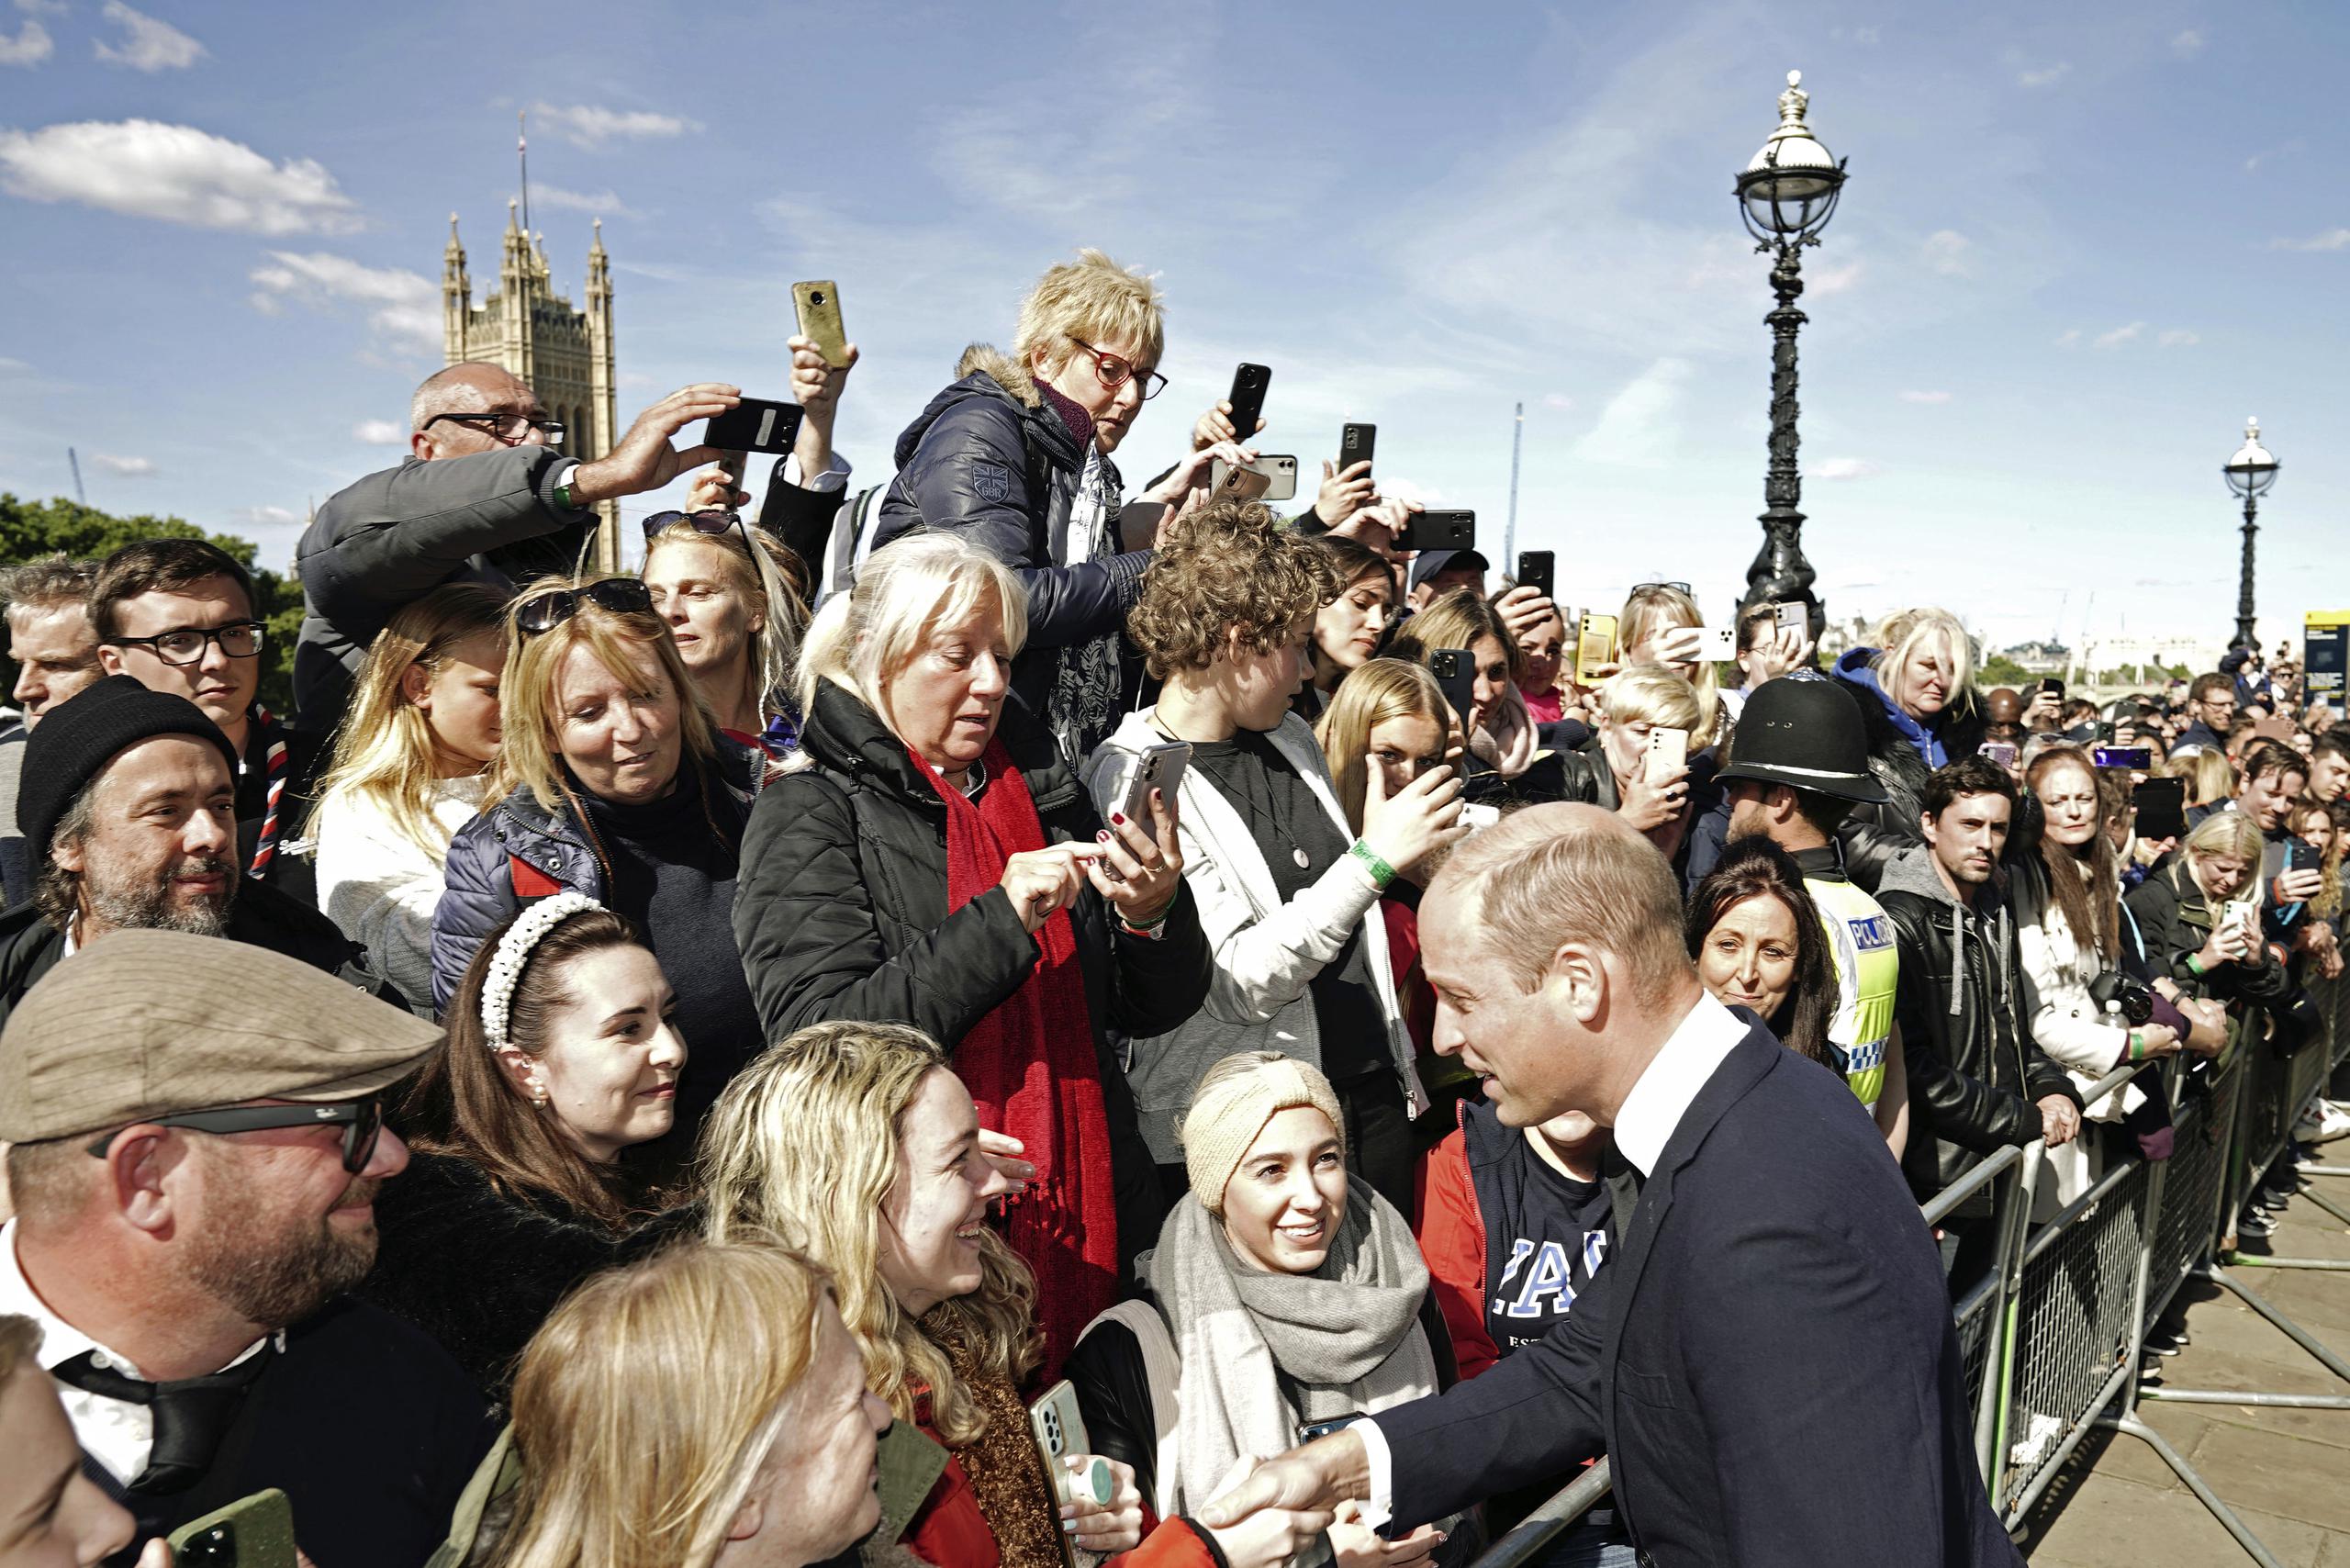 El príncipe Guillermo agradeció a la gente la paciencia de esperar pacientemente en la fila.